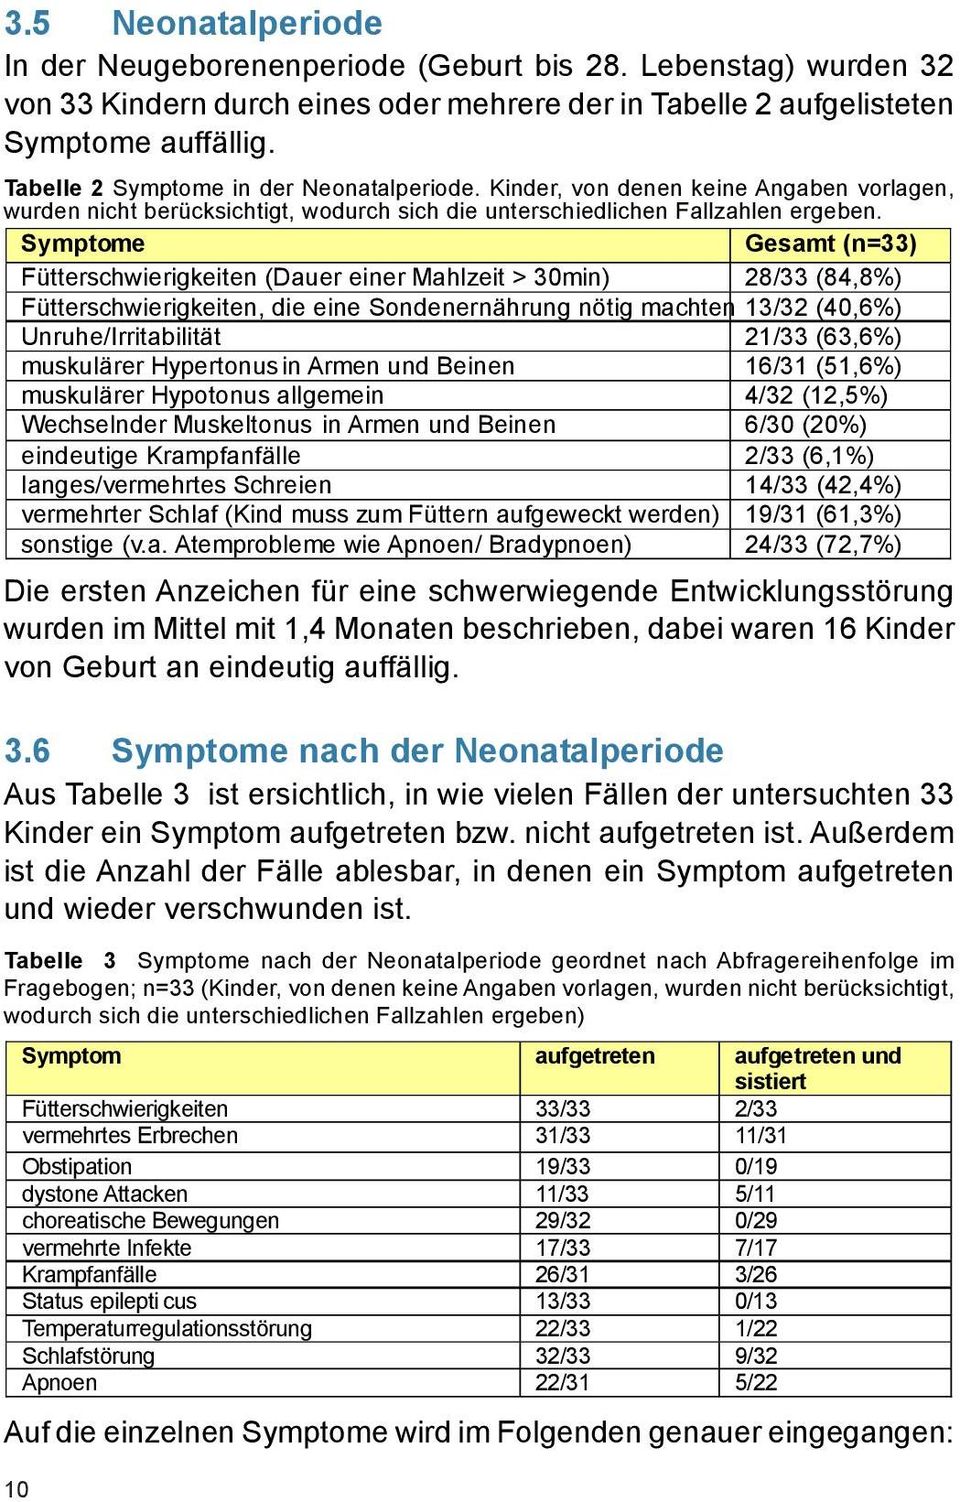 Symptome Gesamt (n=33) Fütterschwierigkeiten (Dauer einer Mahlzeit > 30min) 28/33 (84,8%) Fütterschwierigkeiten, die eine Sondenernährung nötig machten 13/32 (40,6%) Unruhe/Irritabilität 21/33